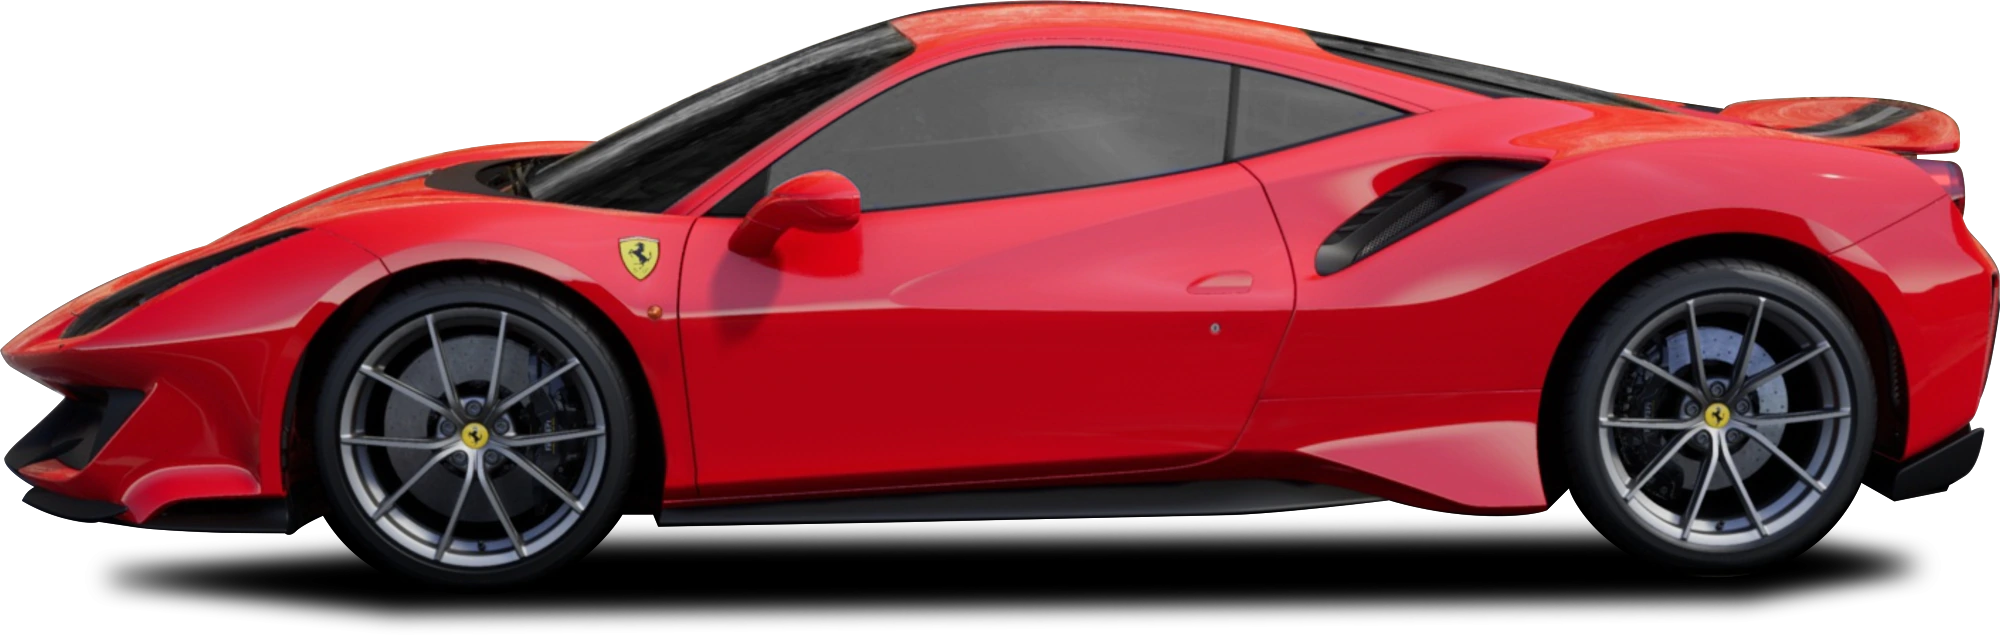 Red Ferrari GTC4LUSSO Image Transparente